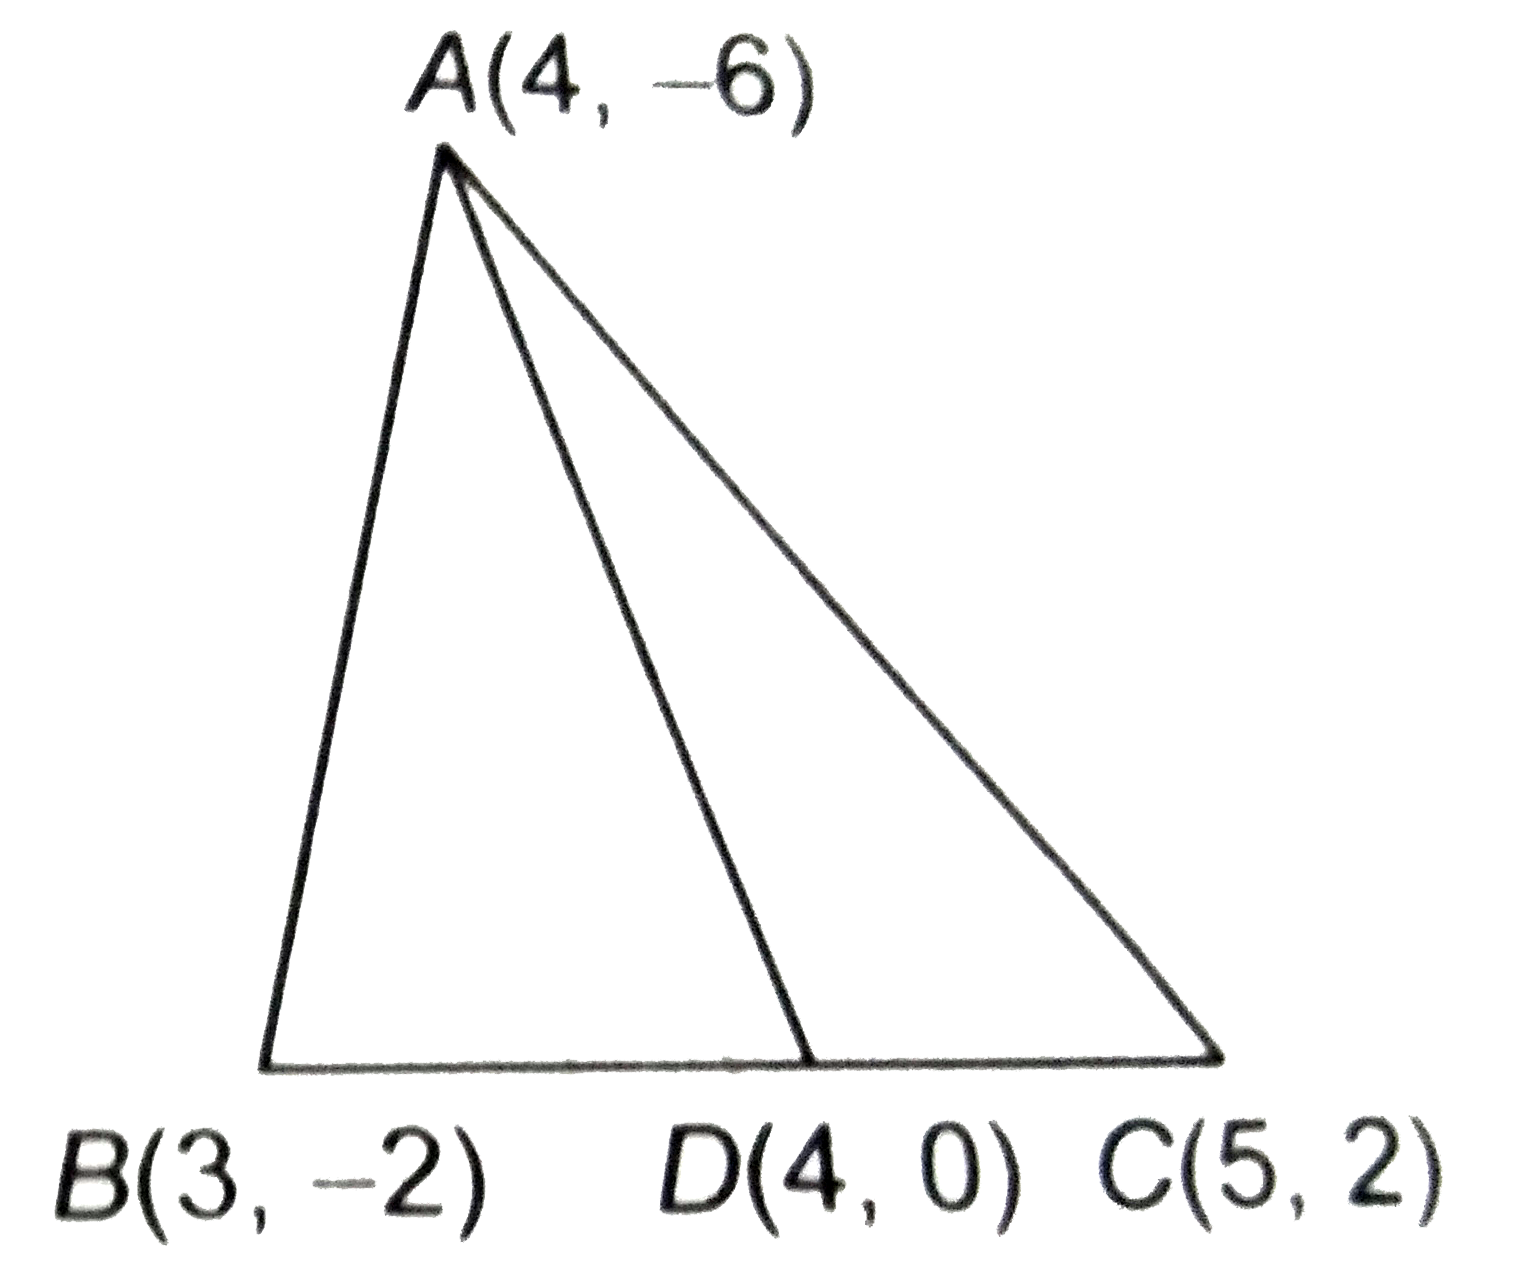 कक्षा IX में आपने पढ़ा है की किसी त्रिभुज की एक मध्यिका उसे बराबर क्षेत्रफलों वाले दो त्रिभुजों में विभाजित करती है । उस त्रिभुज ABC के लिए इस परिणाम का सत्यापन कीजिए जिसके शीर्ष A(4, -6), B(3, -2) और C(5, 2) हैं ।